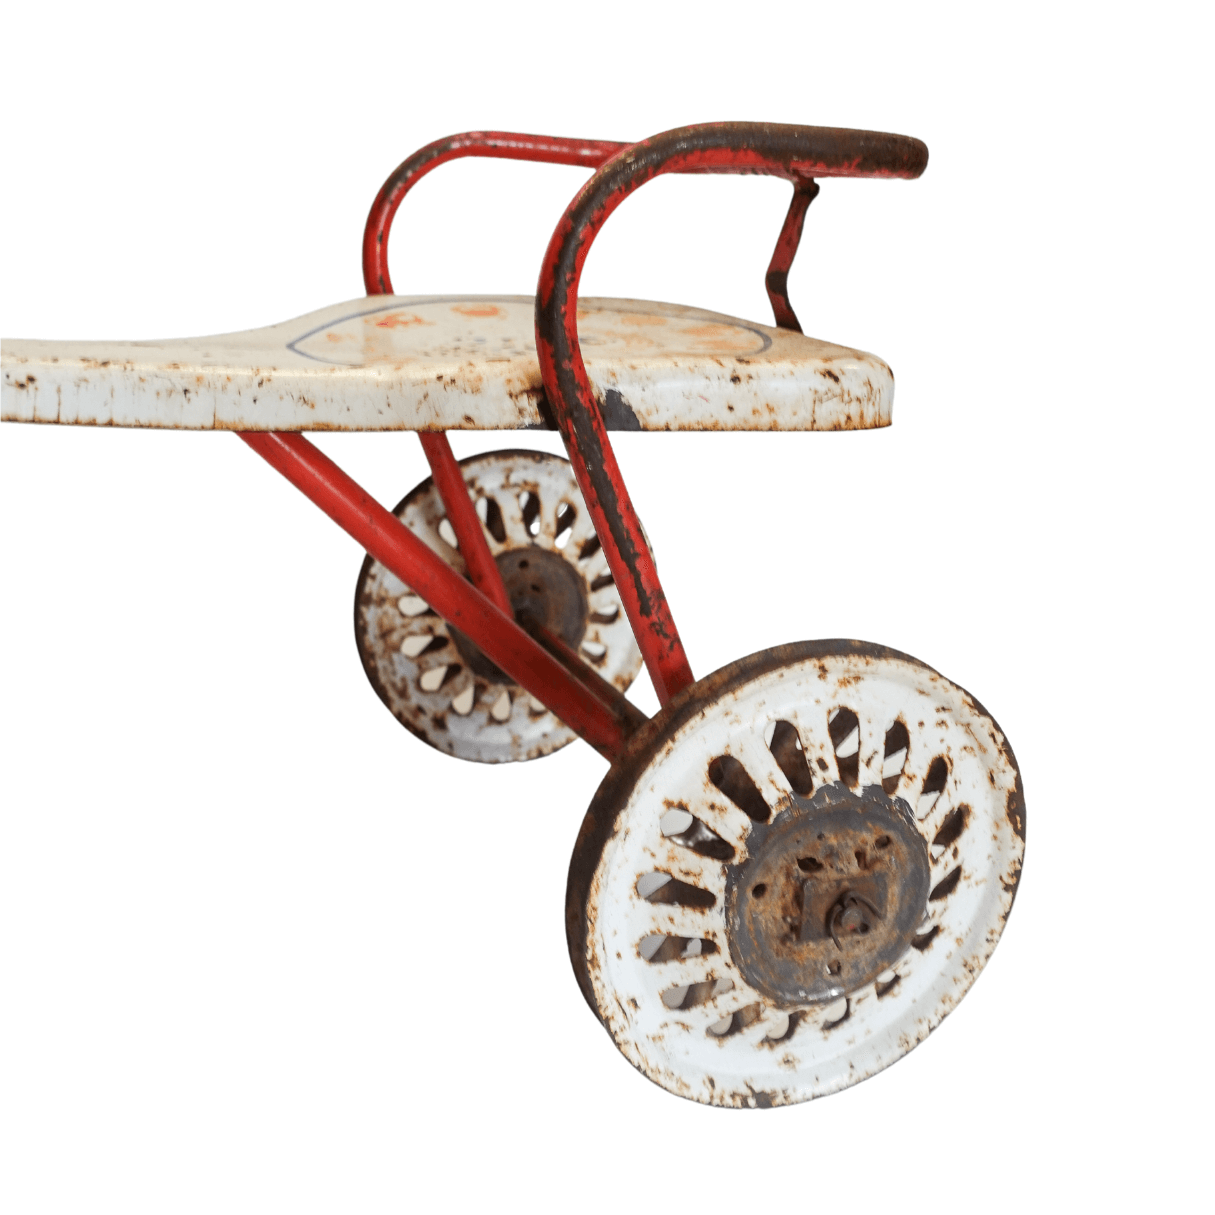 Triciclo Tico Tico - O Famoso Tábua de Carne anos 50-60